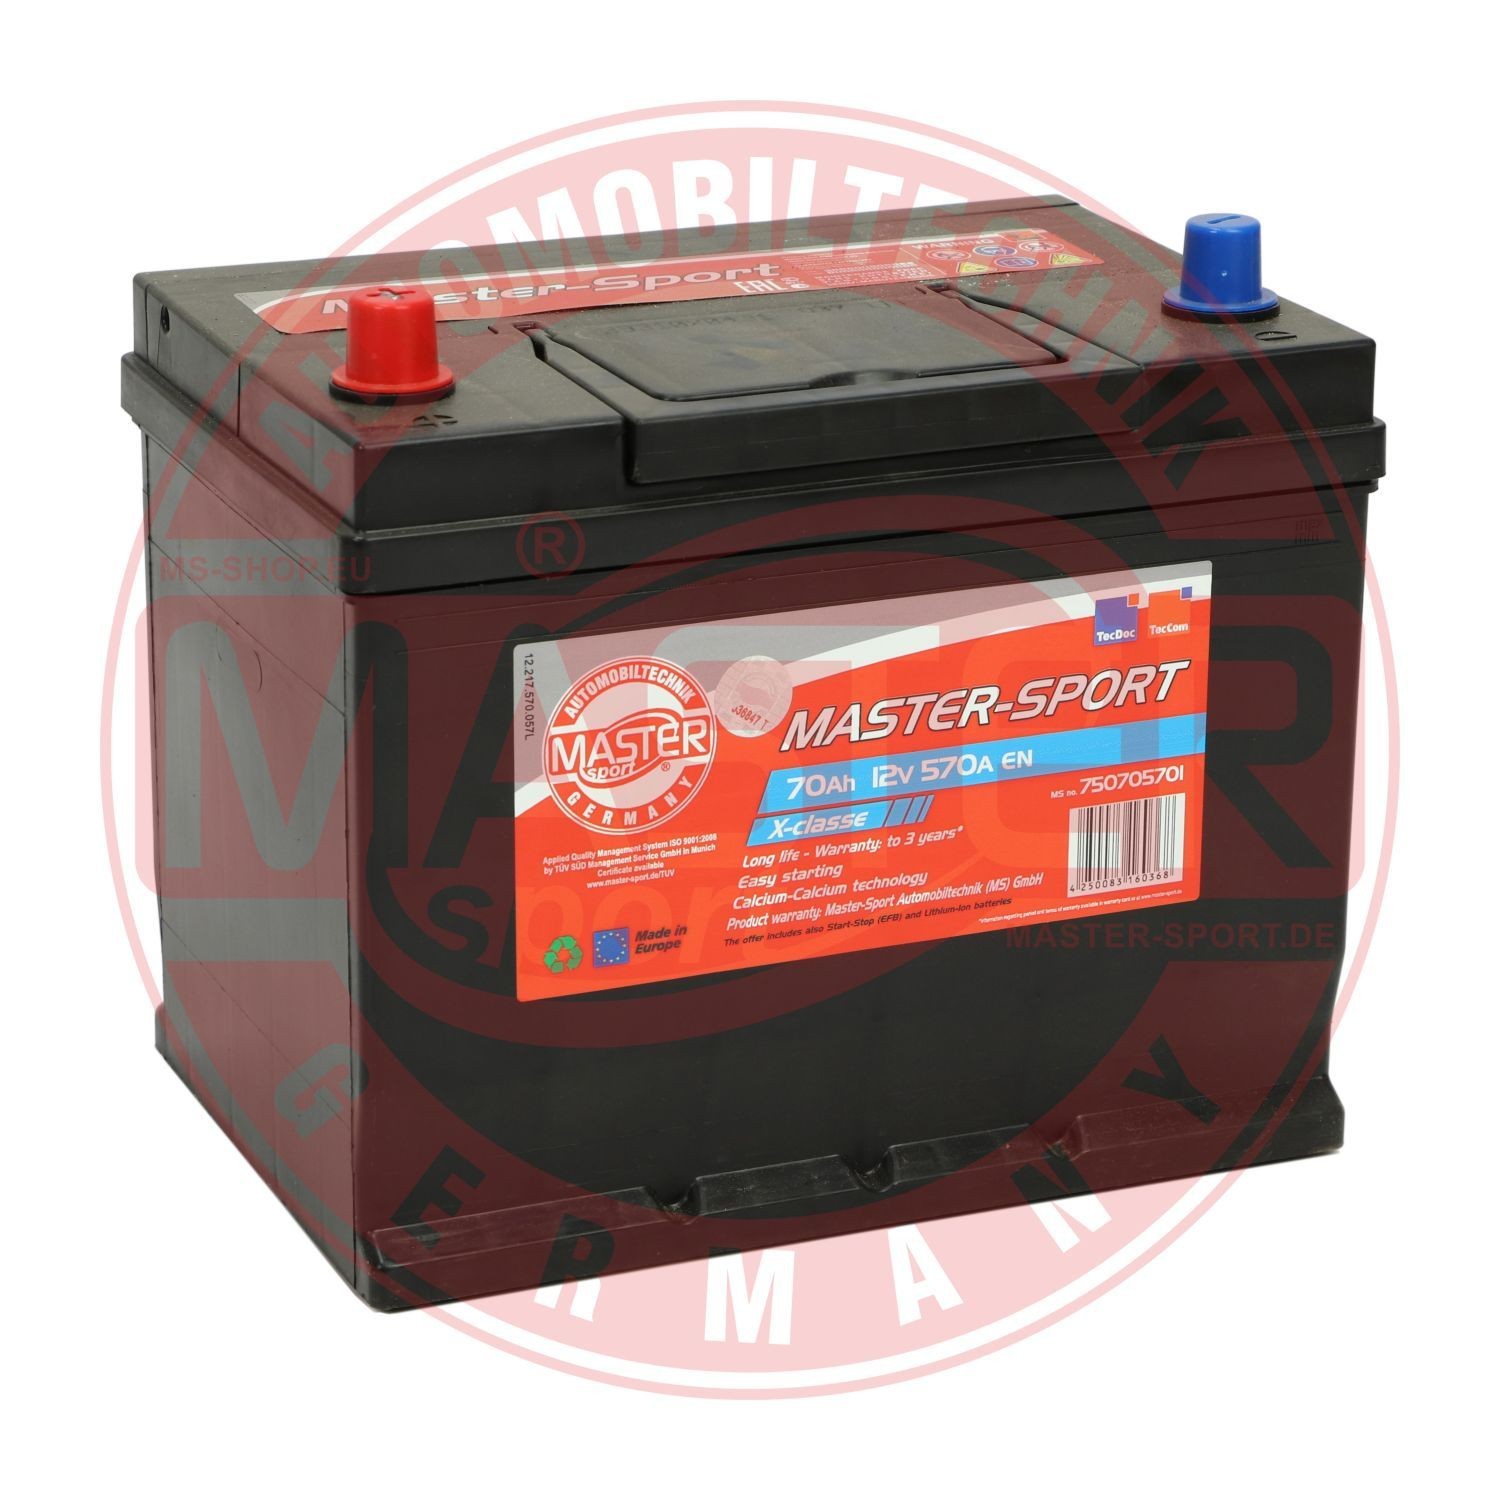 Original MASTER-SPORT Car battery 750705701 for HONDA LEGEND